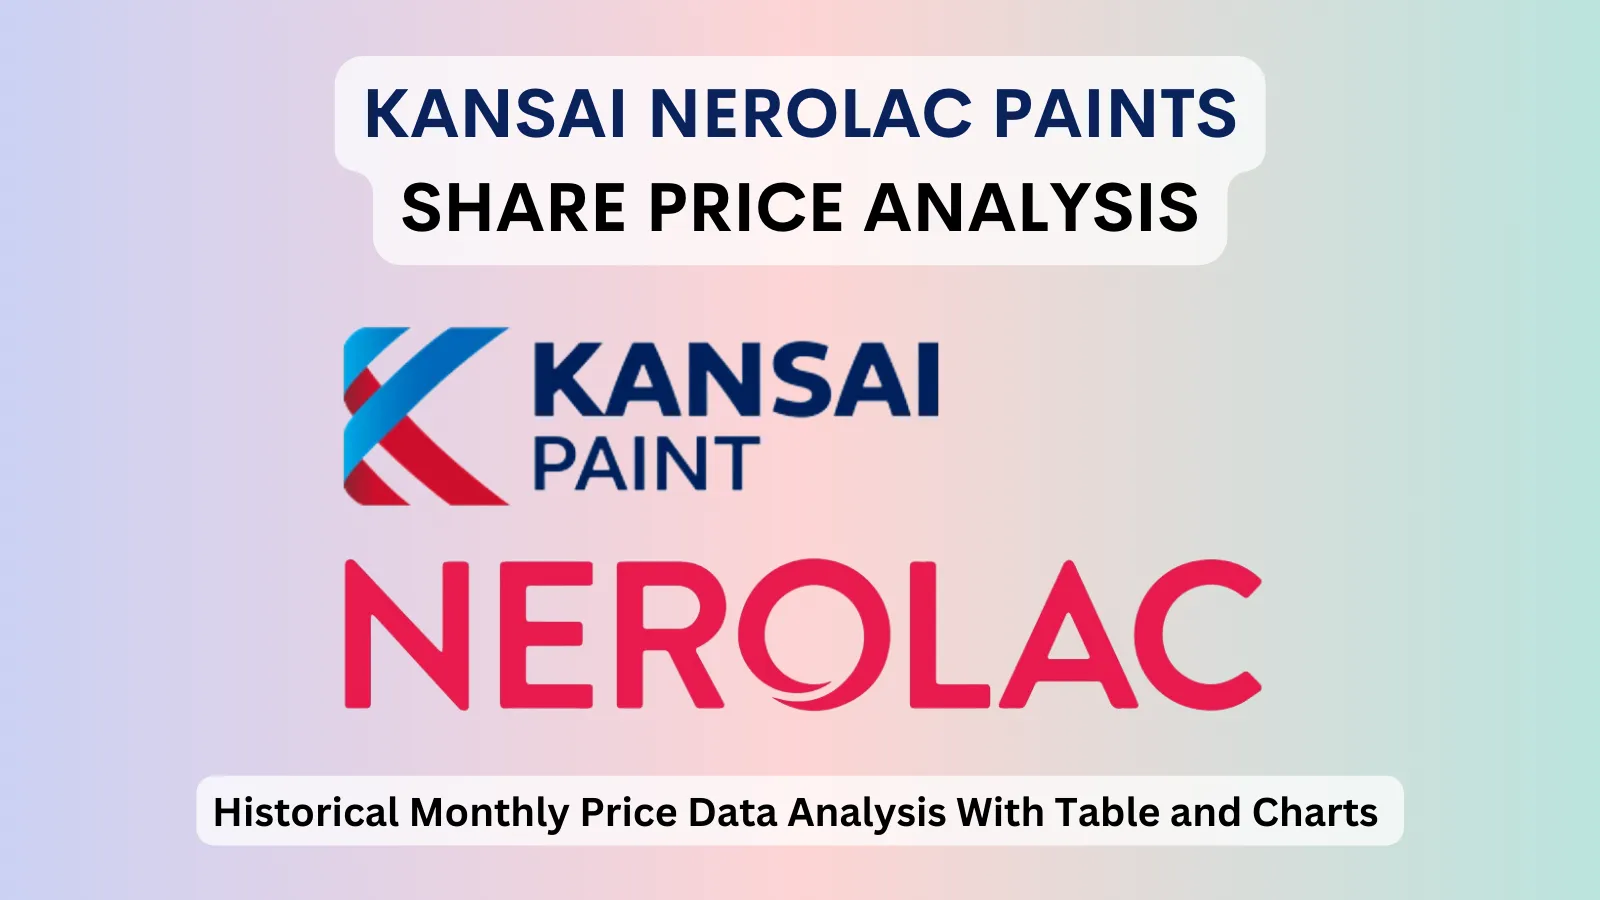 Kansai Nerolac Paints share price analysis